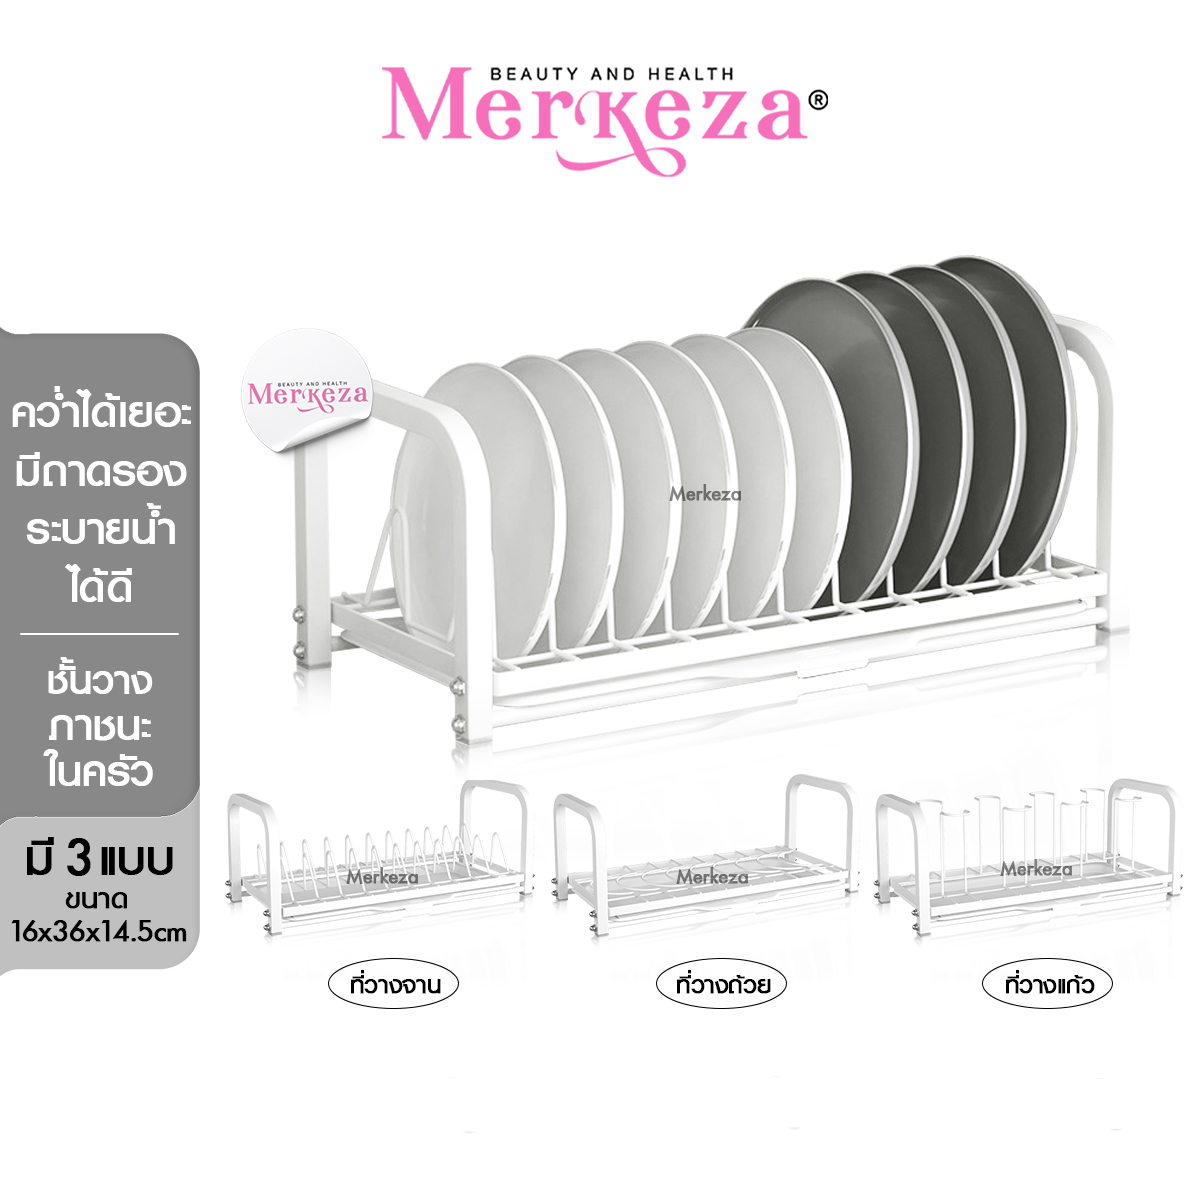 Merkeza Kitchen Shelf ชุดราวคว่ำ ภาชนะ ในครัว วางแก้ว คว่ำจาน เก็บจาน  อุปกรณ์ครัว ที่วางถ้วย แขวนแก้ว ราวคว่ำจา